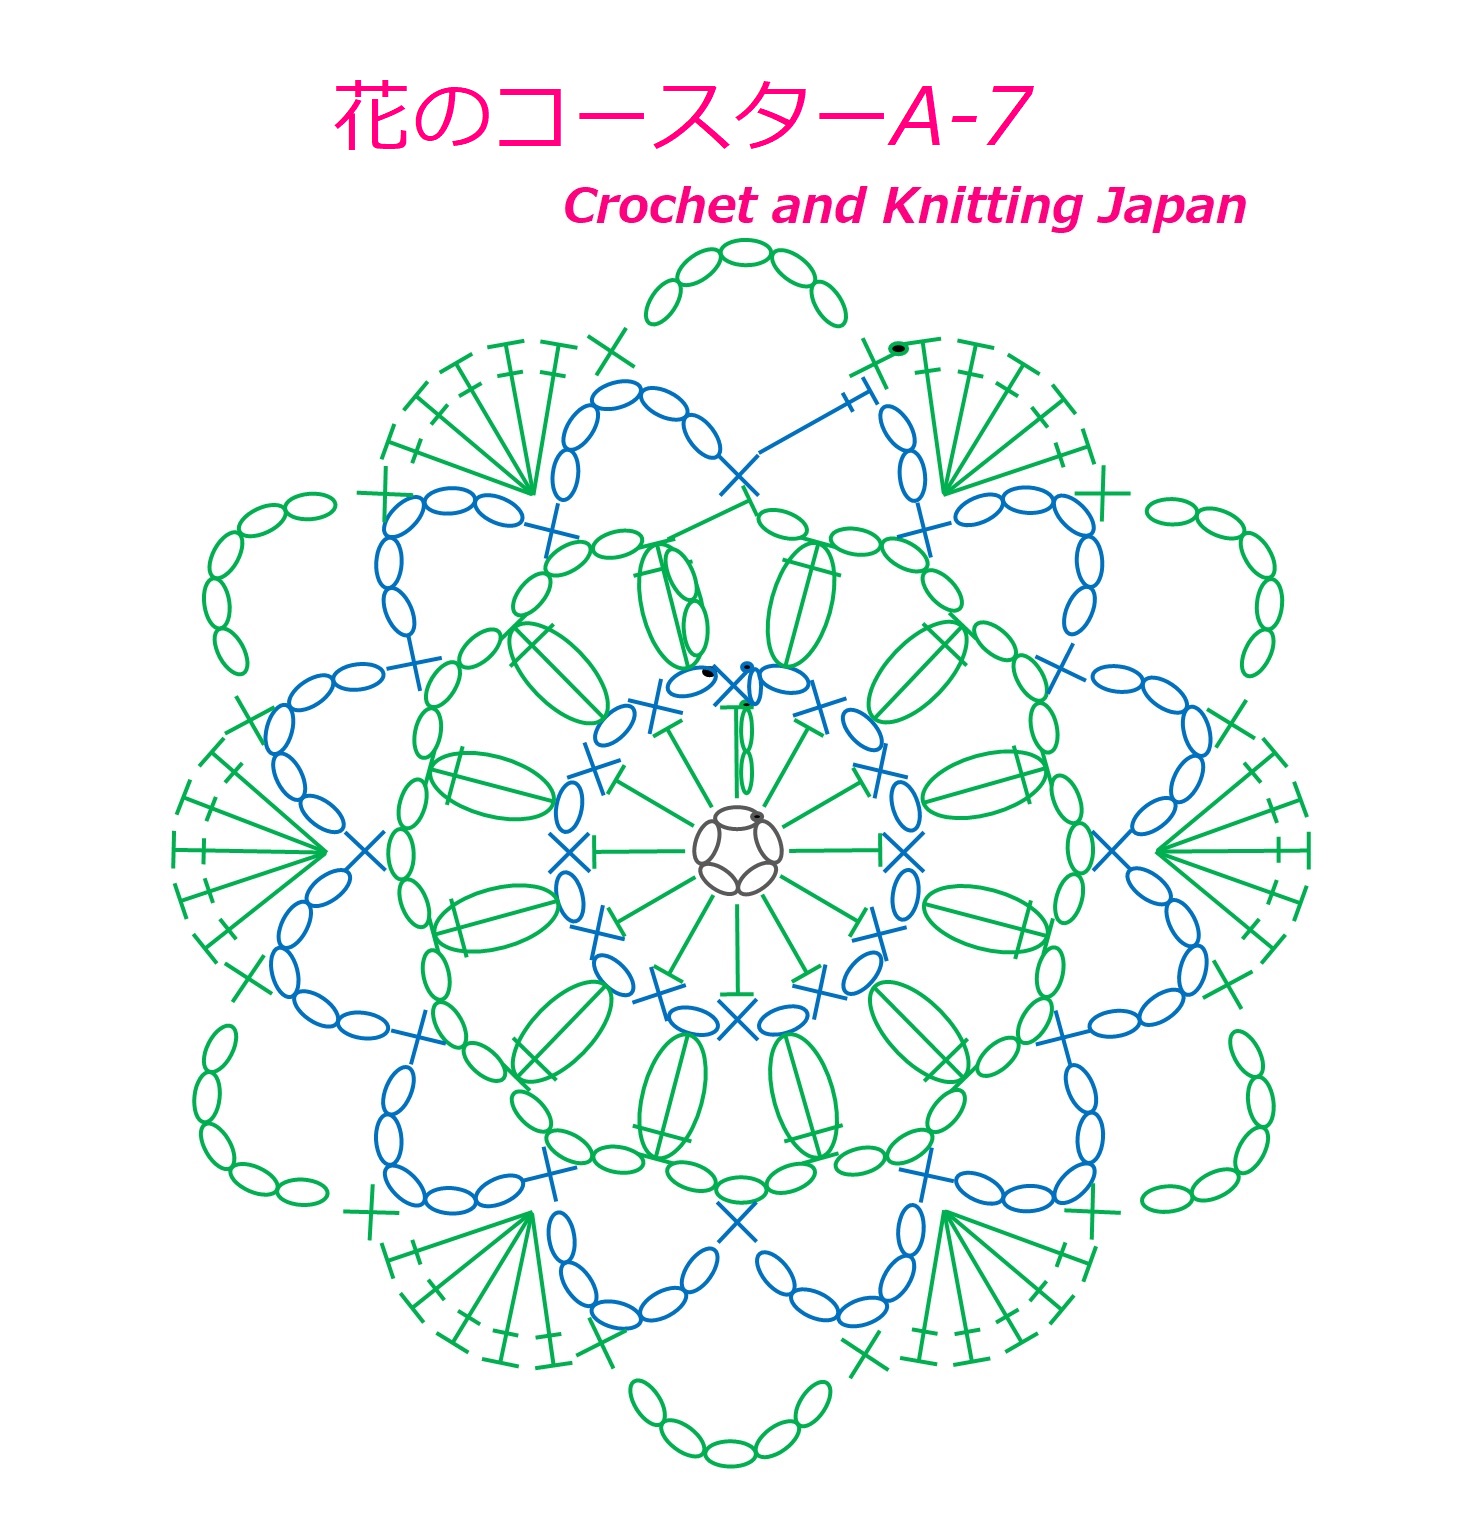 かぎ編み Crochet Japan クロッシェジャパン 花のコースターa 7 かぎ針編み 編み図 字幕解説 Crochet Flower Coaster Crochet And Knitting Japan